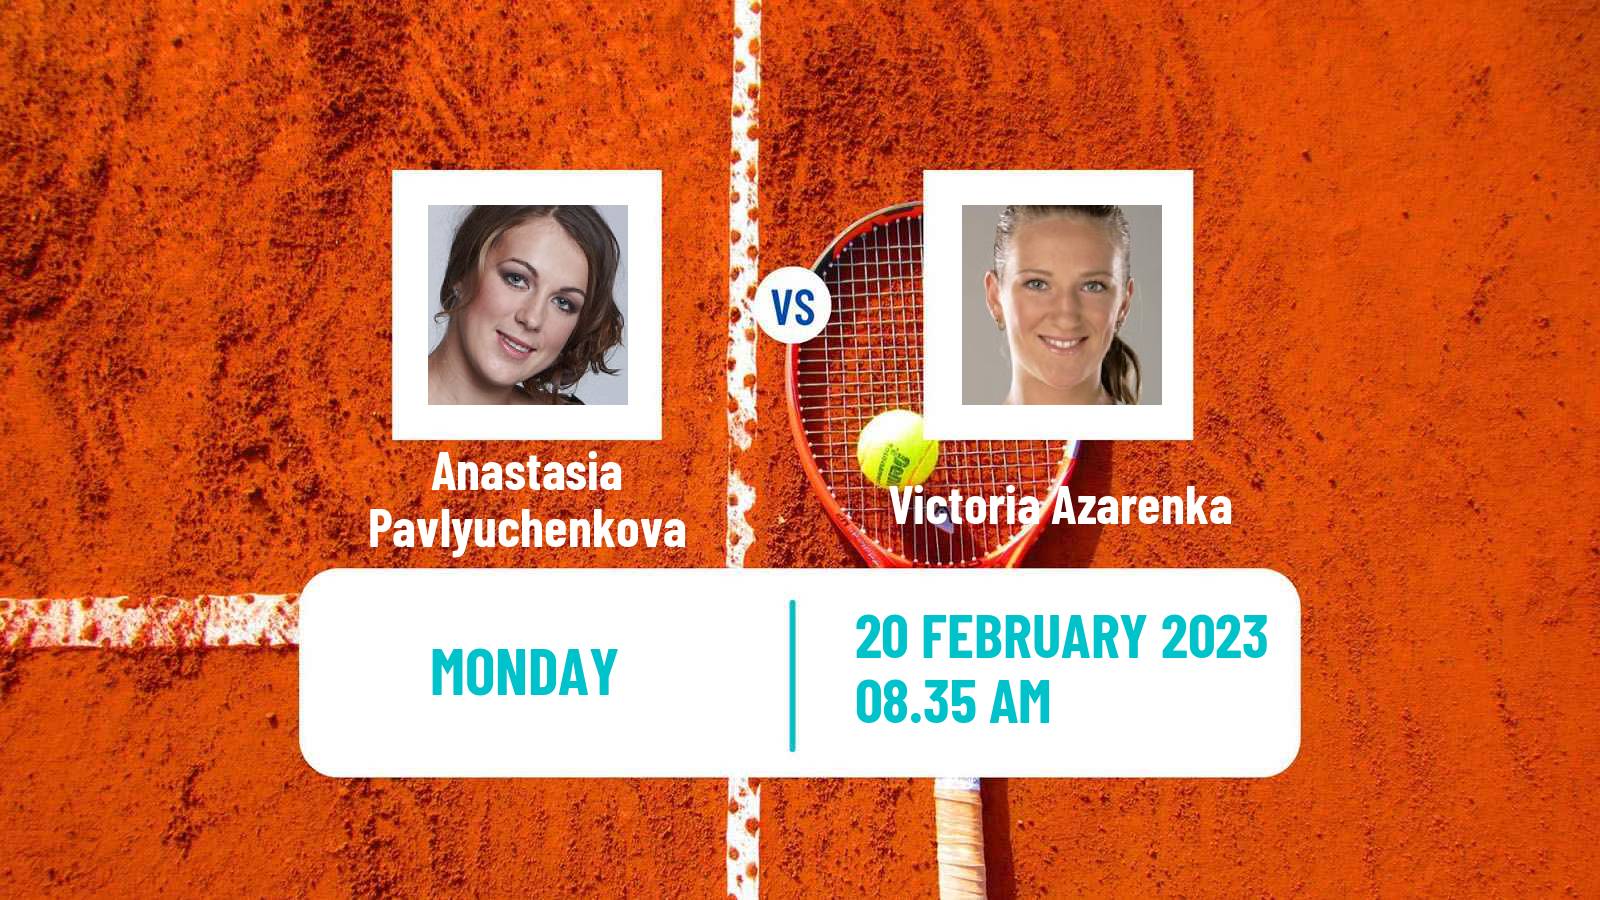 Tennis WTA Dubai Anastasia Pavlyuchenkova - Victoria Azarenka